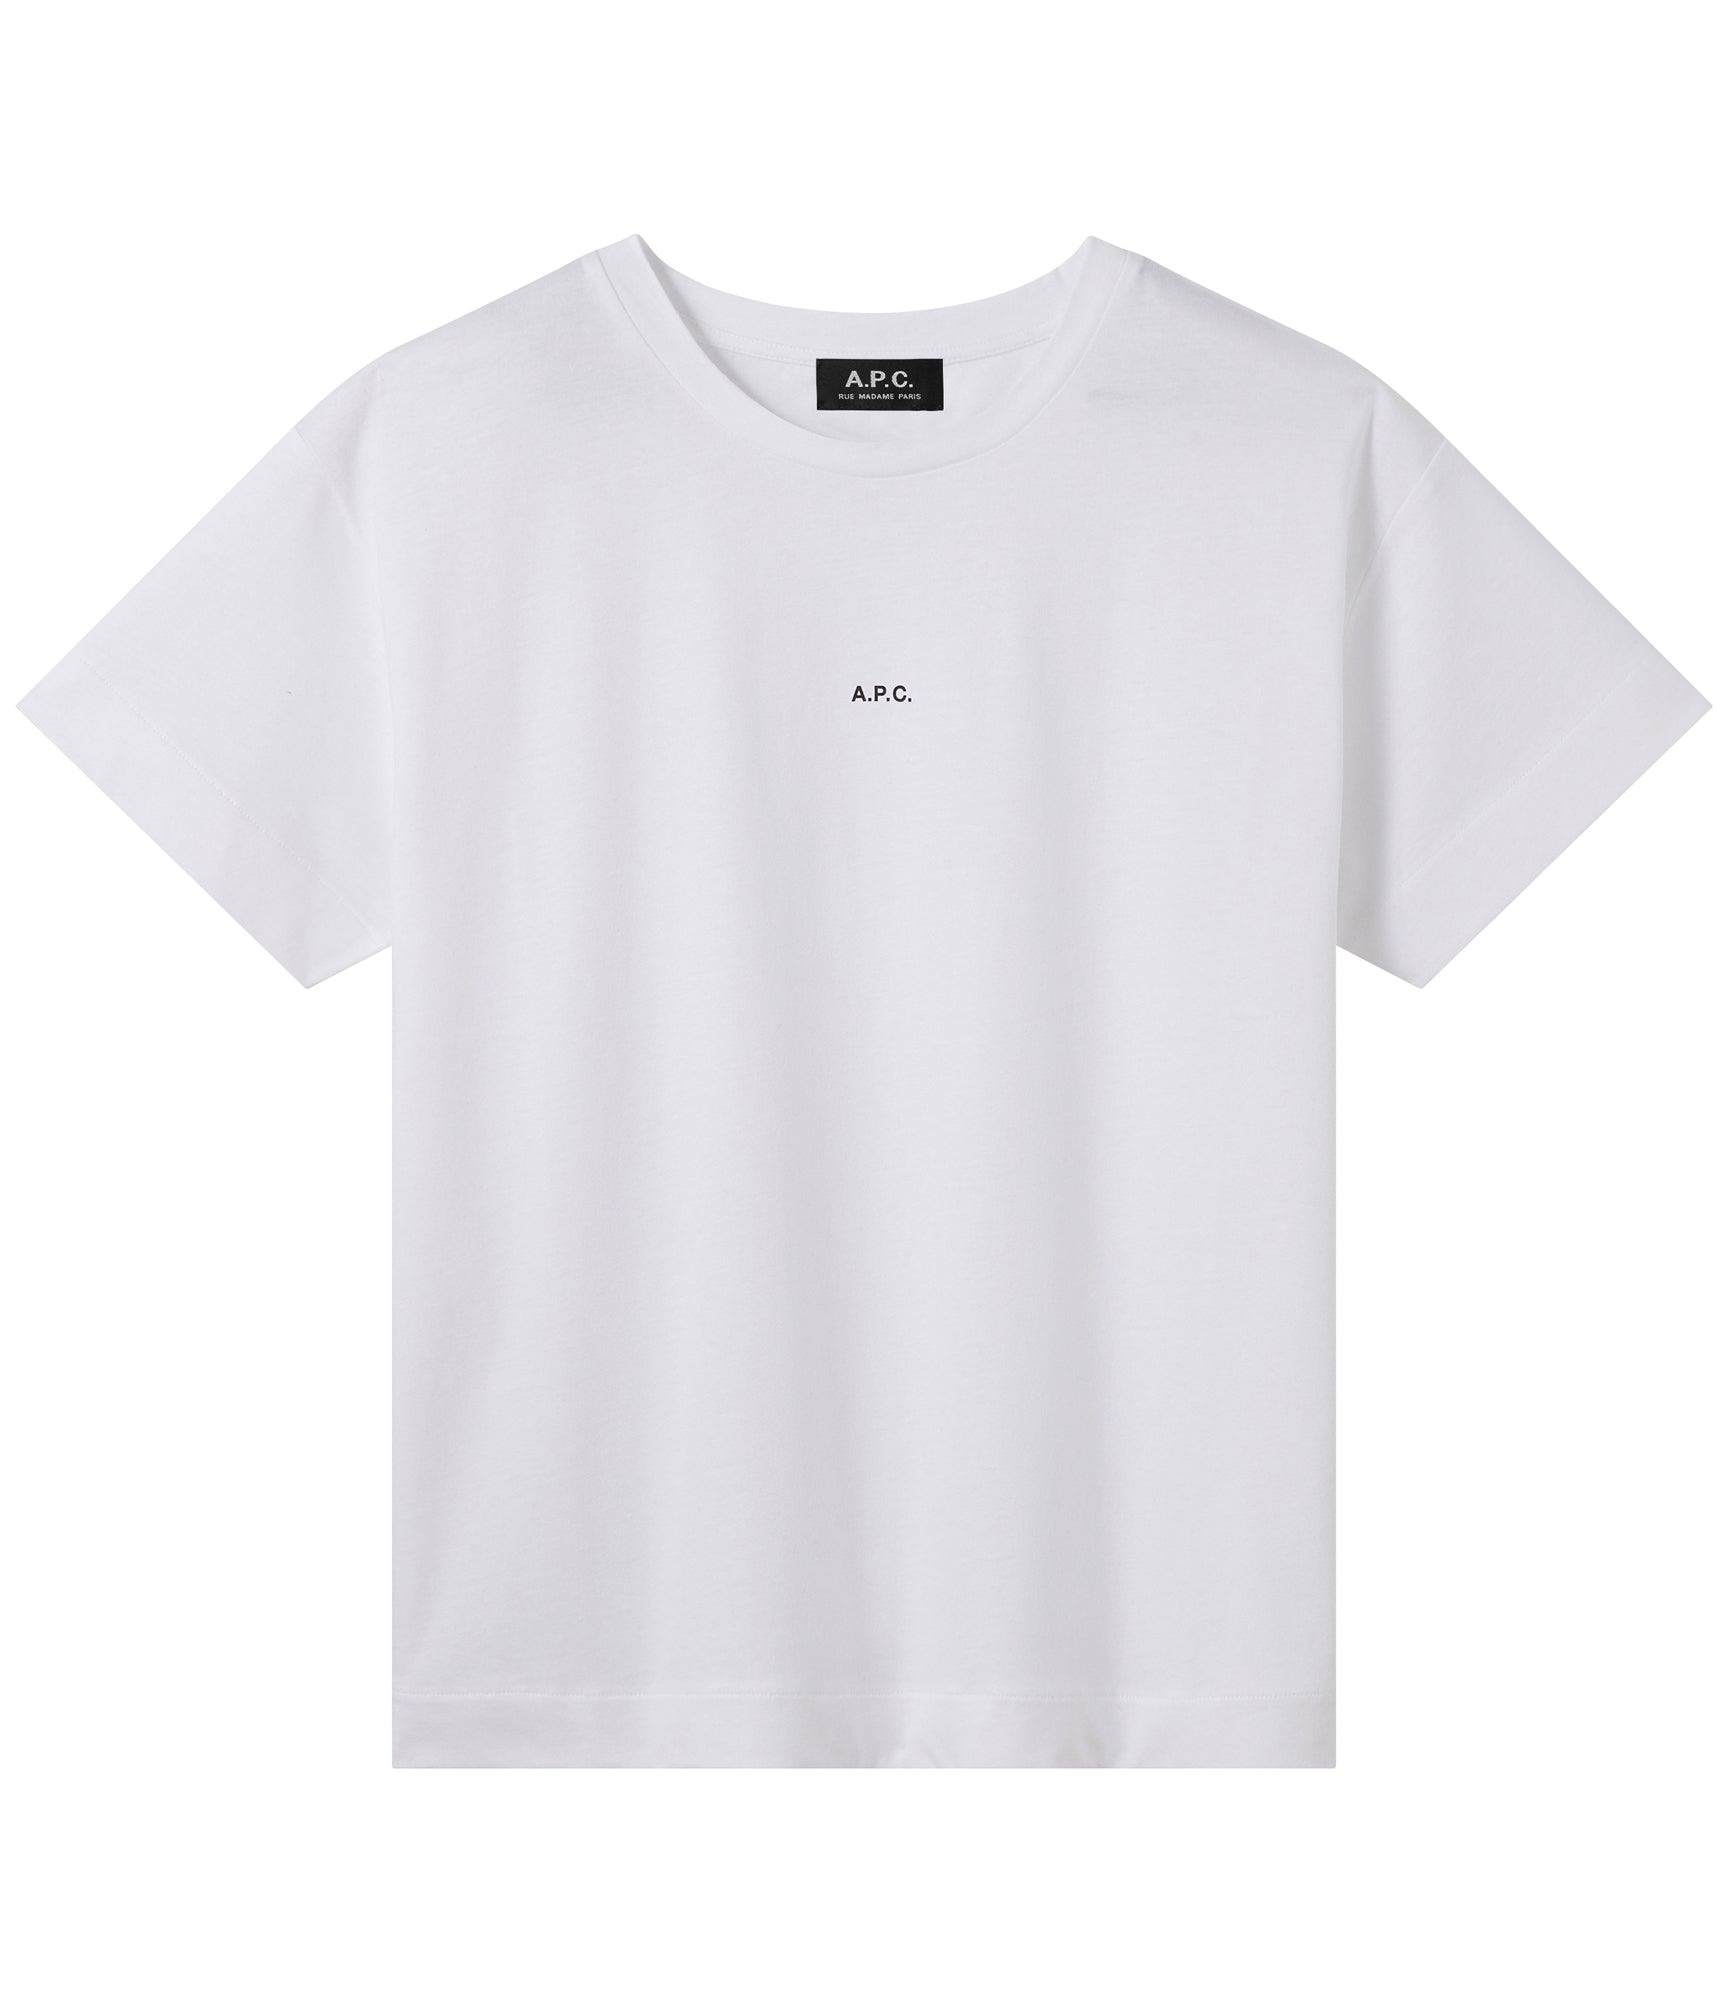 Jade t-shirt, white